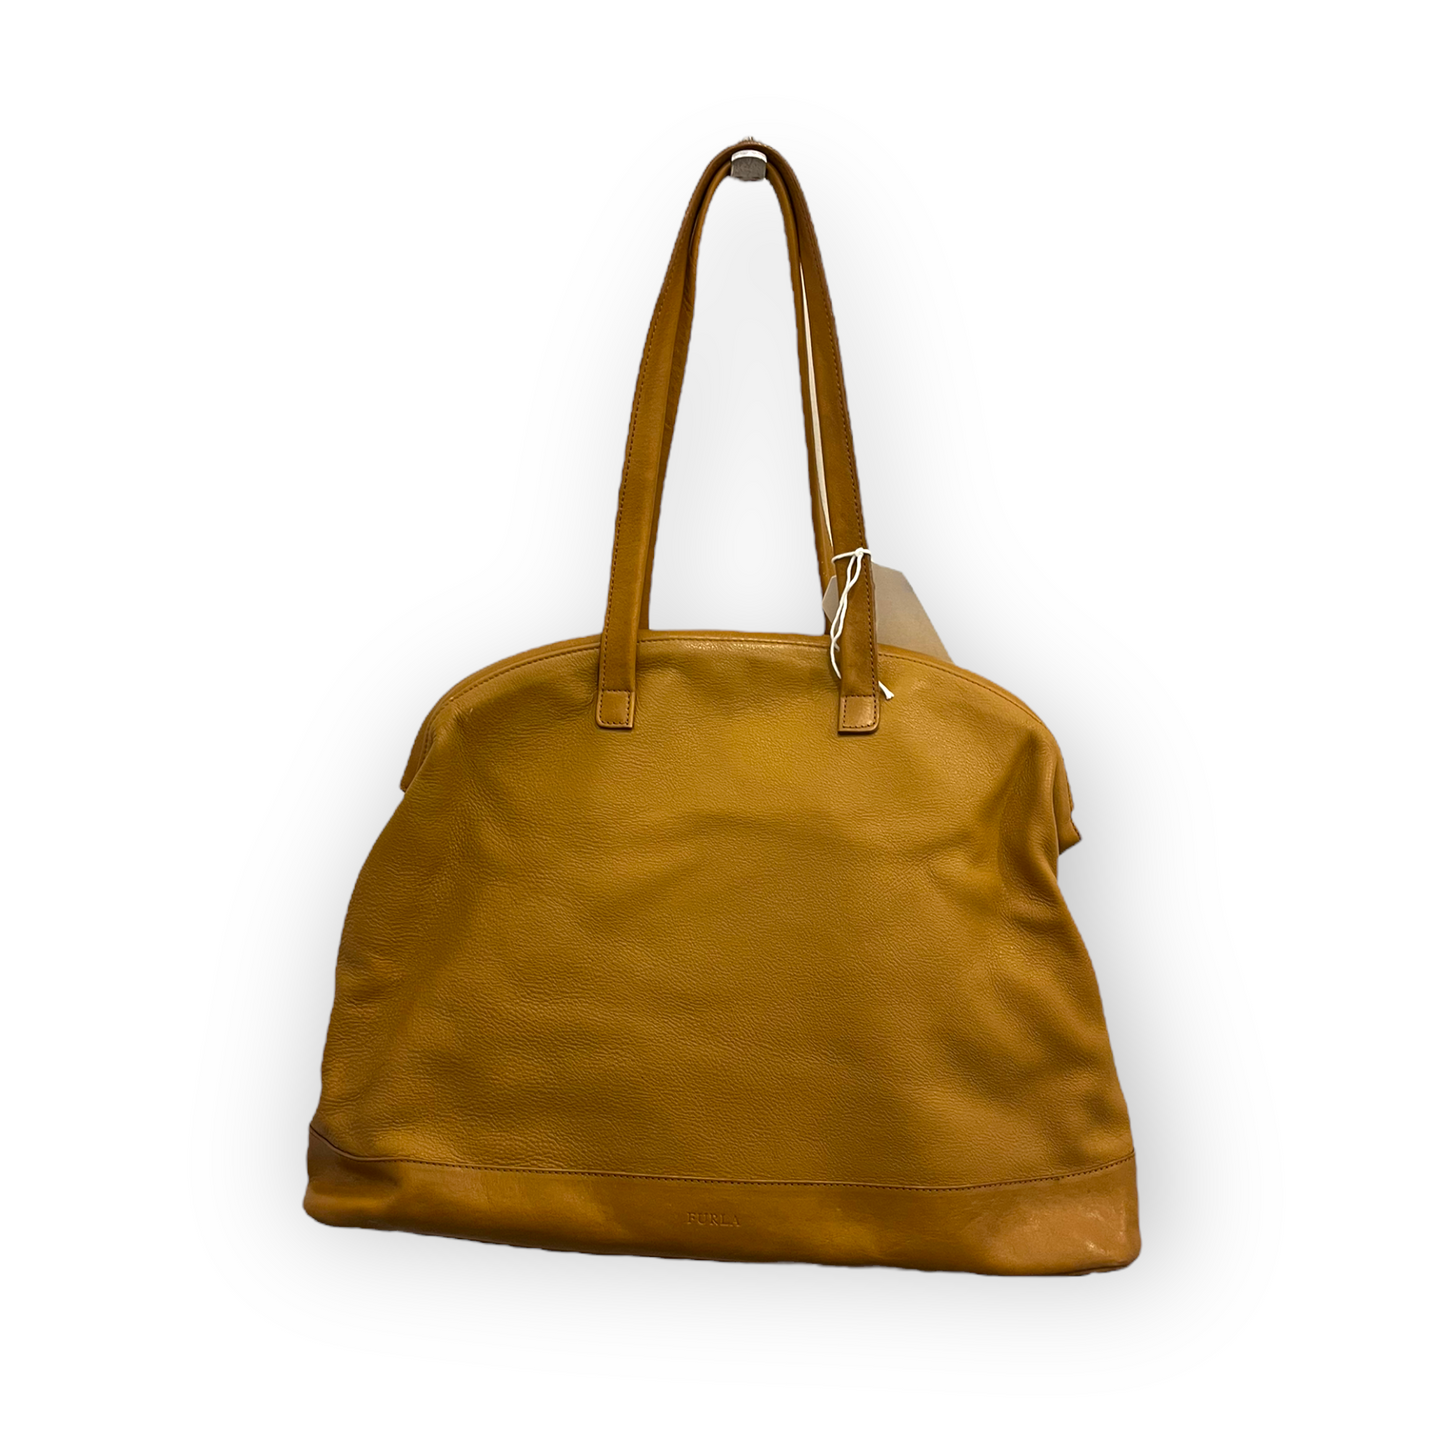 Furla Tan Leather Bag